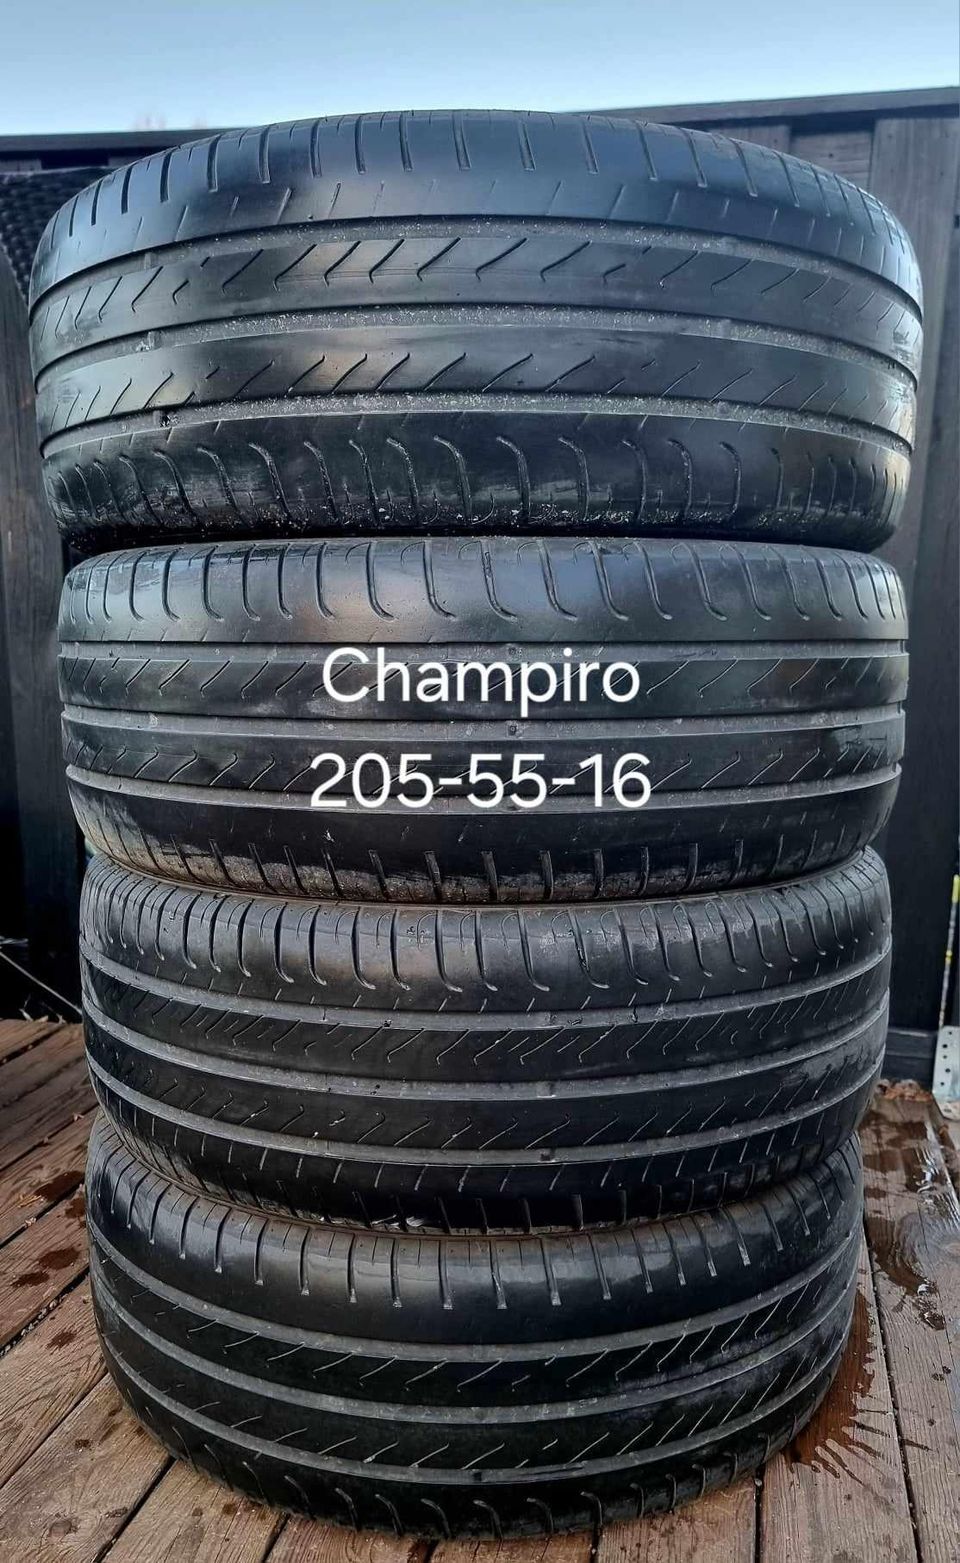 Champiro 205-55-16 kesärenkaat